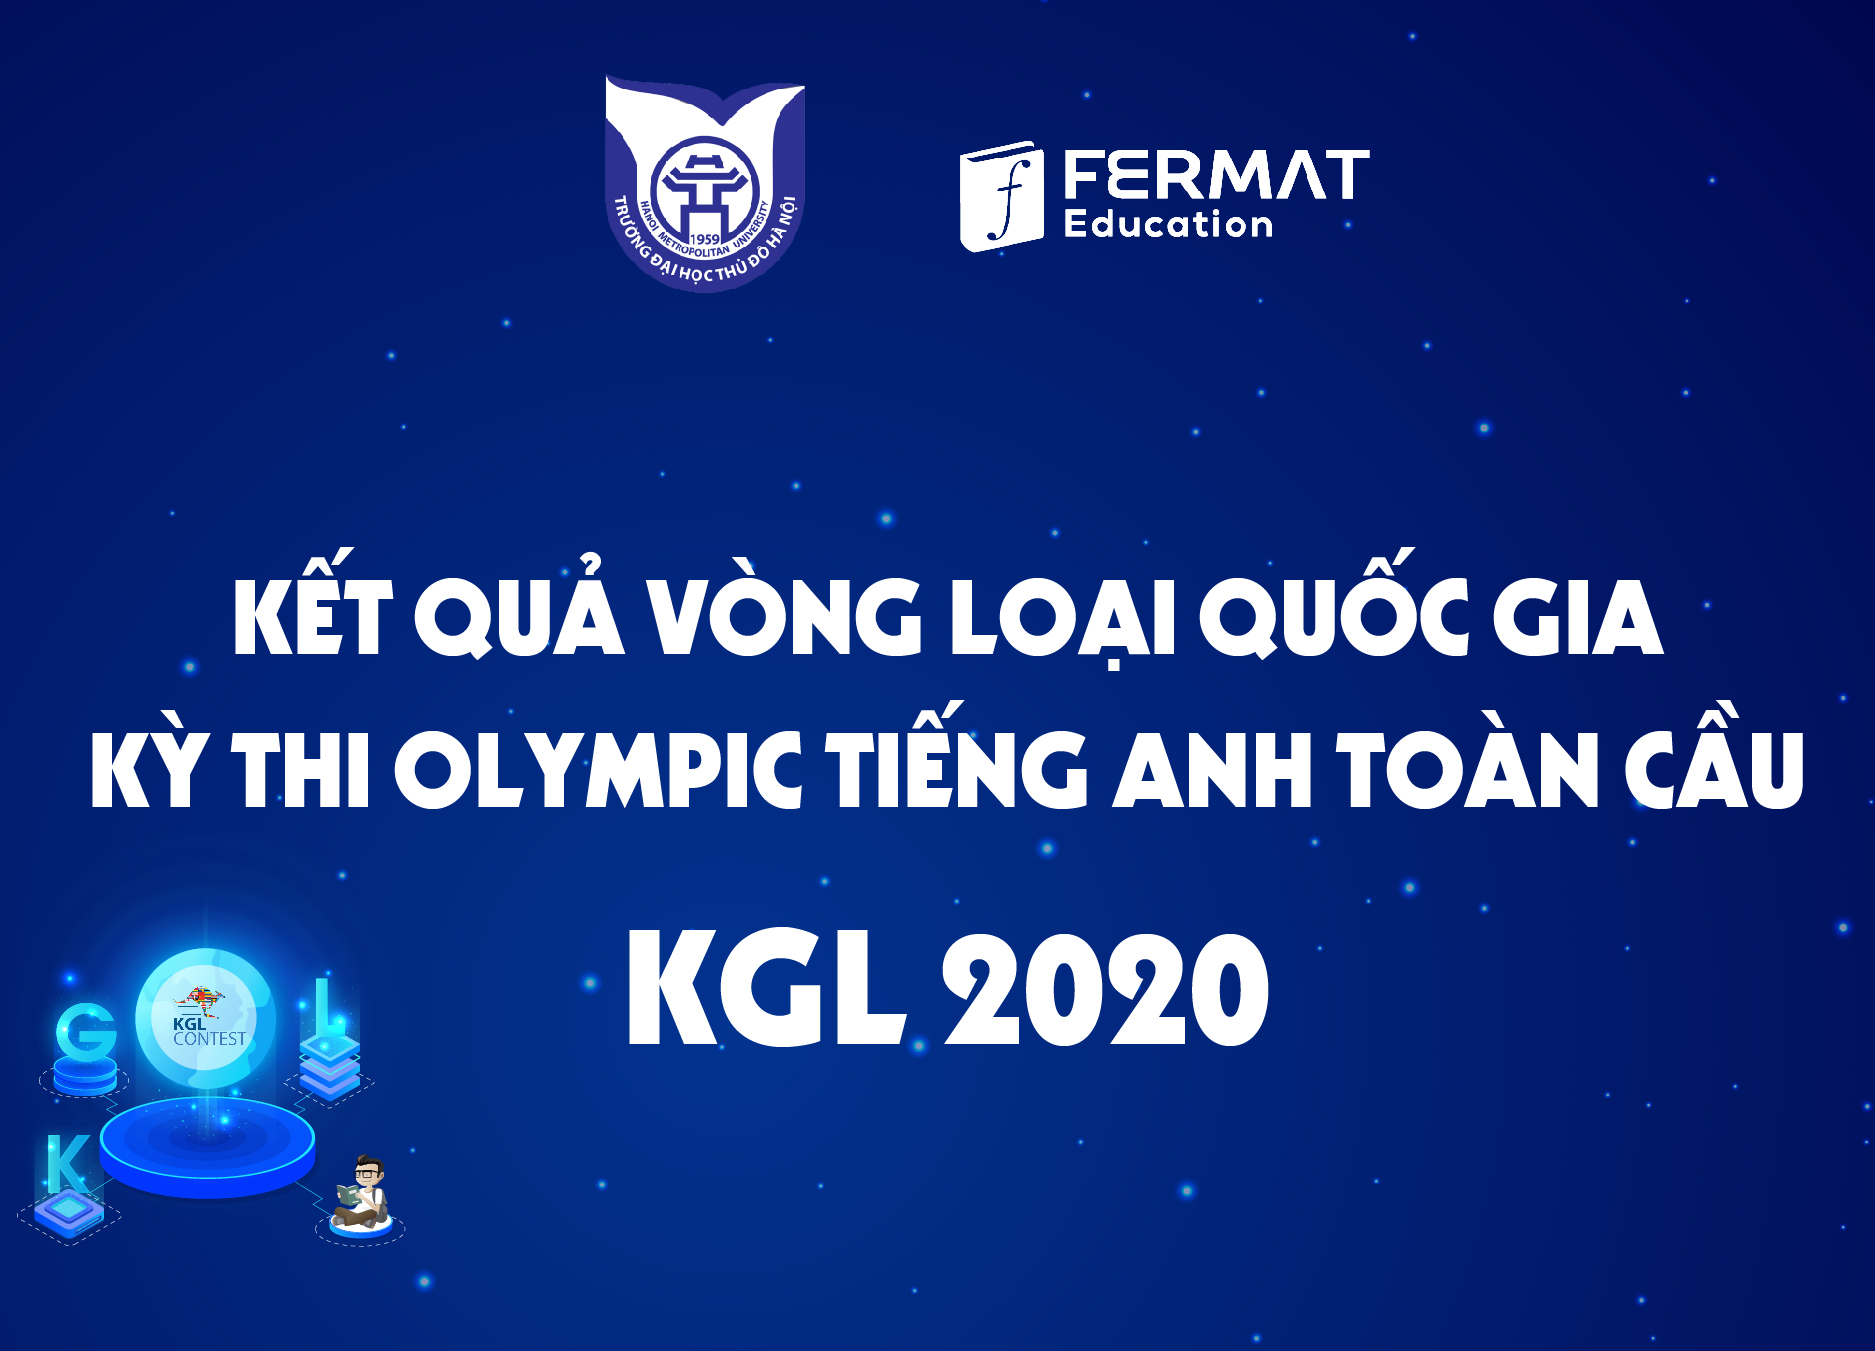 Học sinh Việt Nam đạt thành tích cao trong kỳ thi Olympic Tiếng Anh toàn cầu KGL Contest 2020.